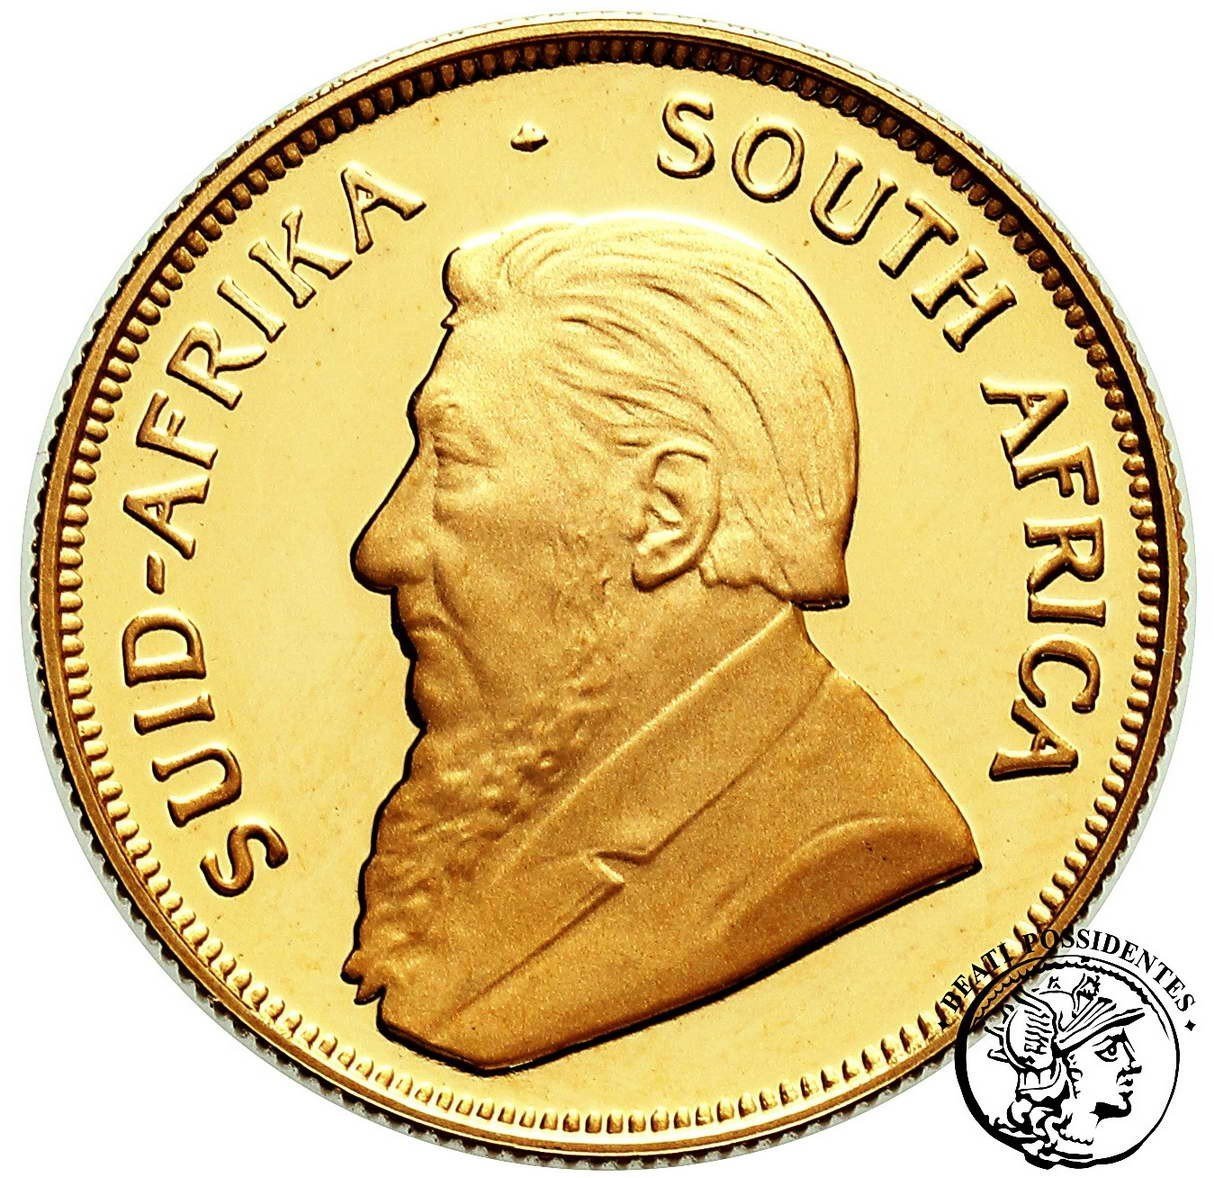 Republika Południowej Afryki 1/2 Krugerrand 1997 stempel lustrzany st.L/L-